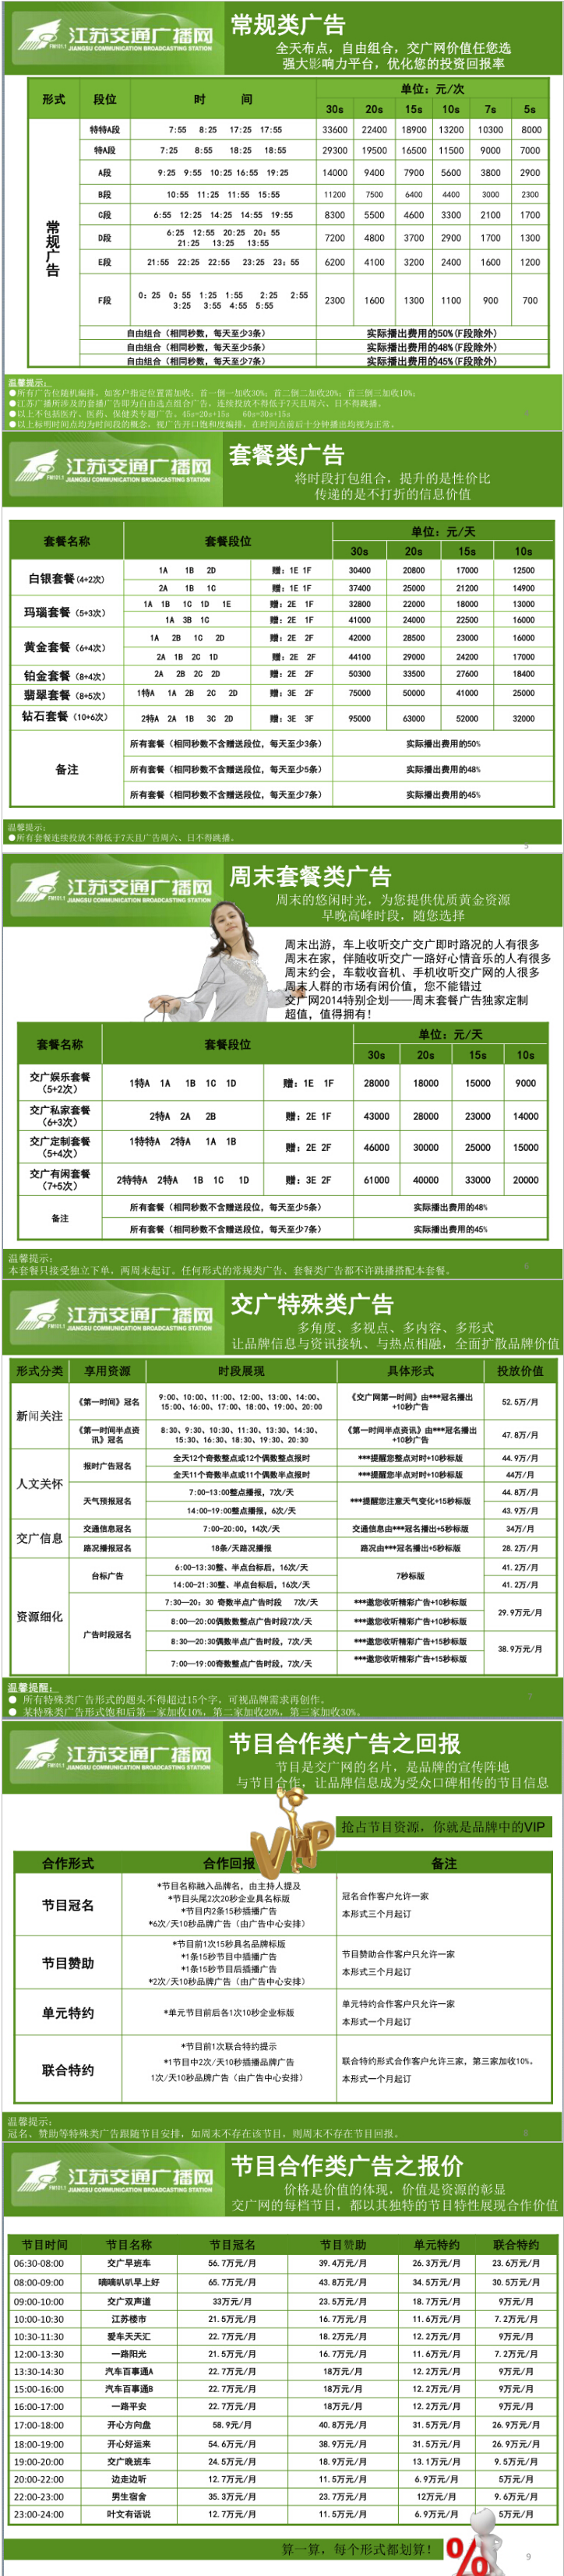 2014江苏人民广播电台交通台 FM101.1广告报价表.png